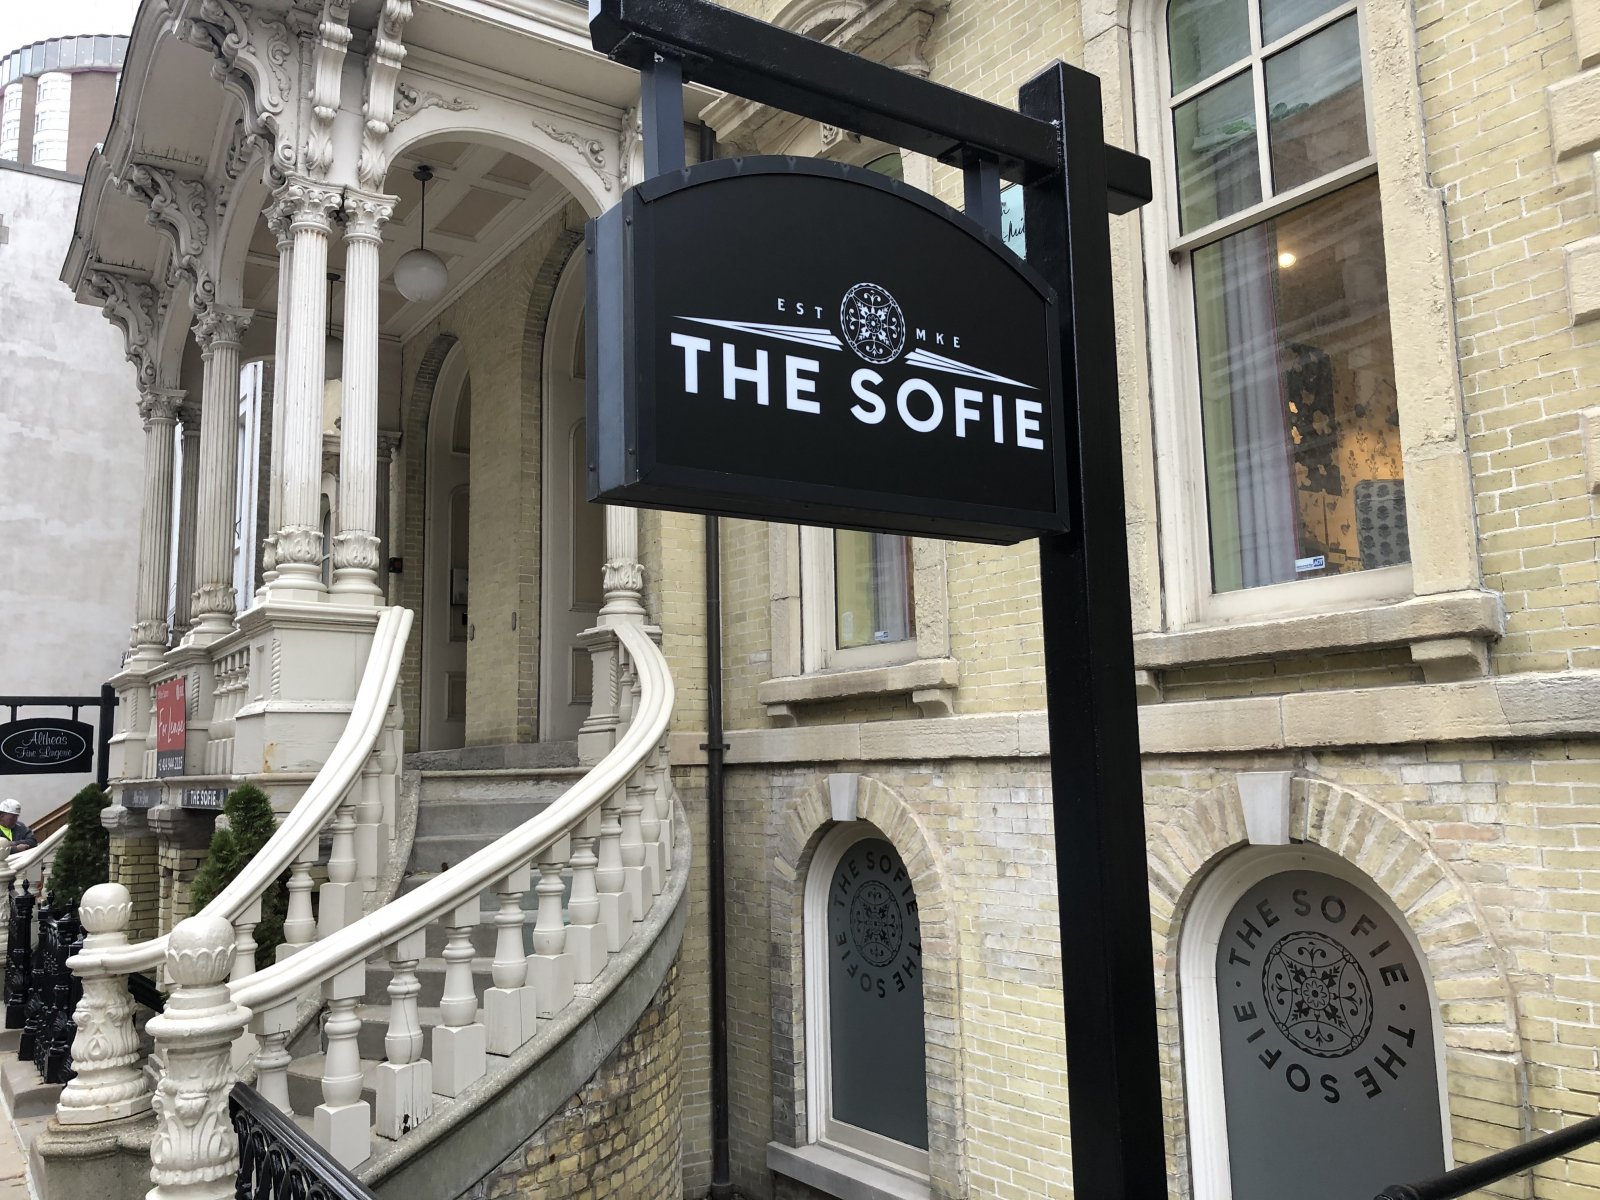 The Sofie